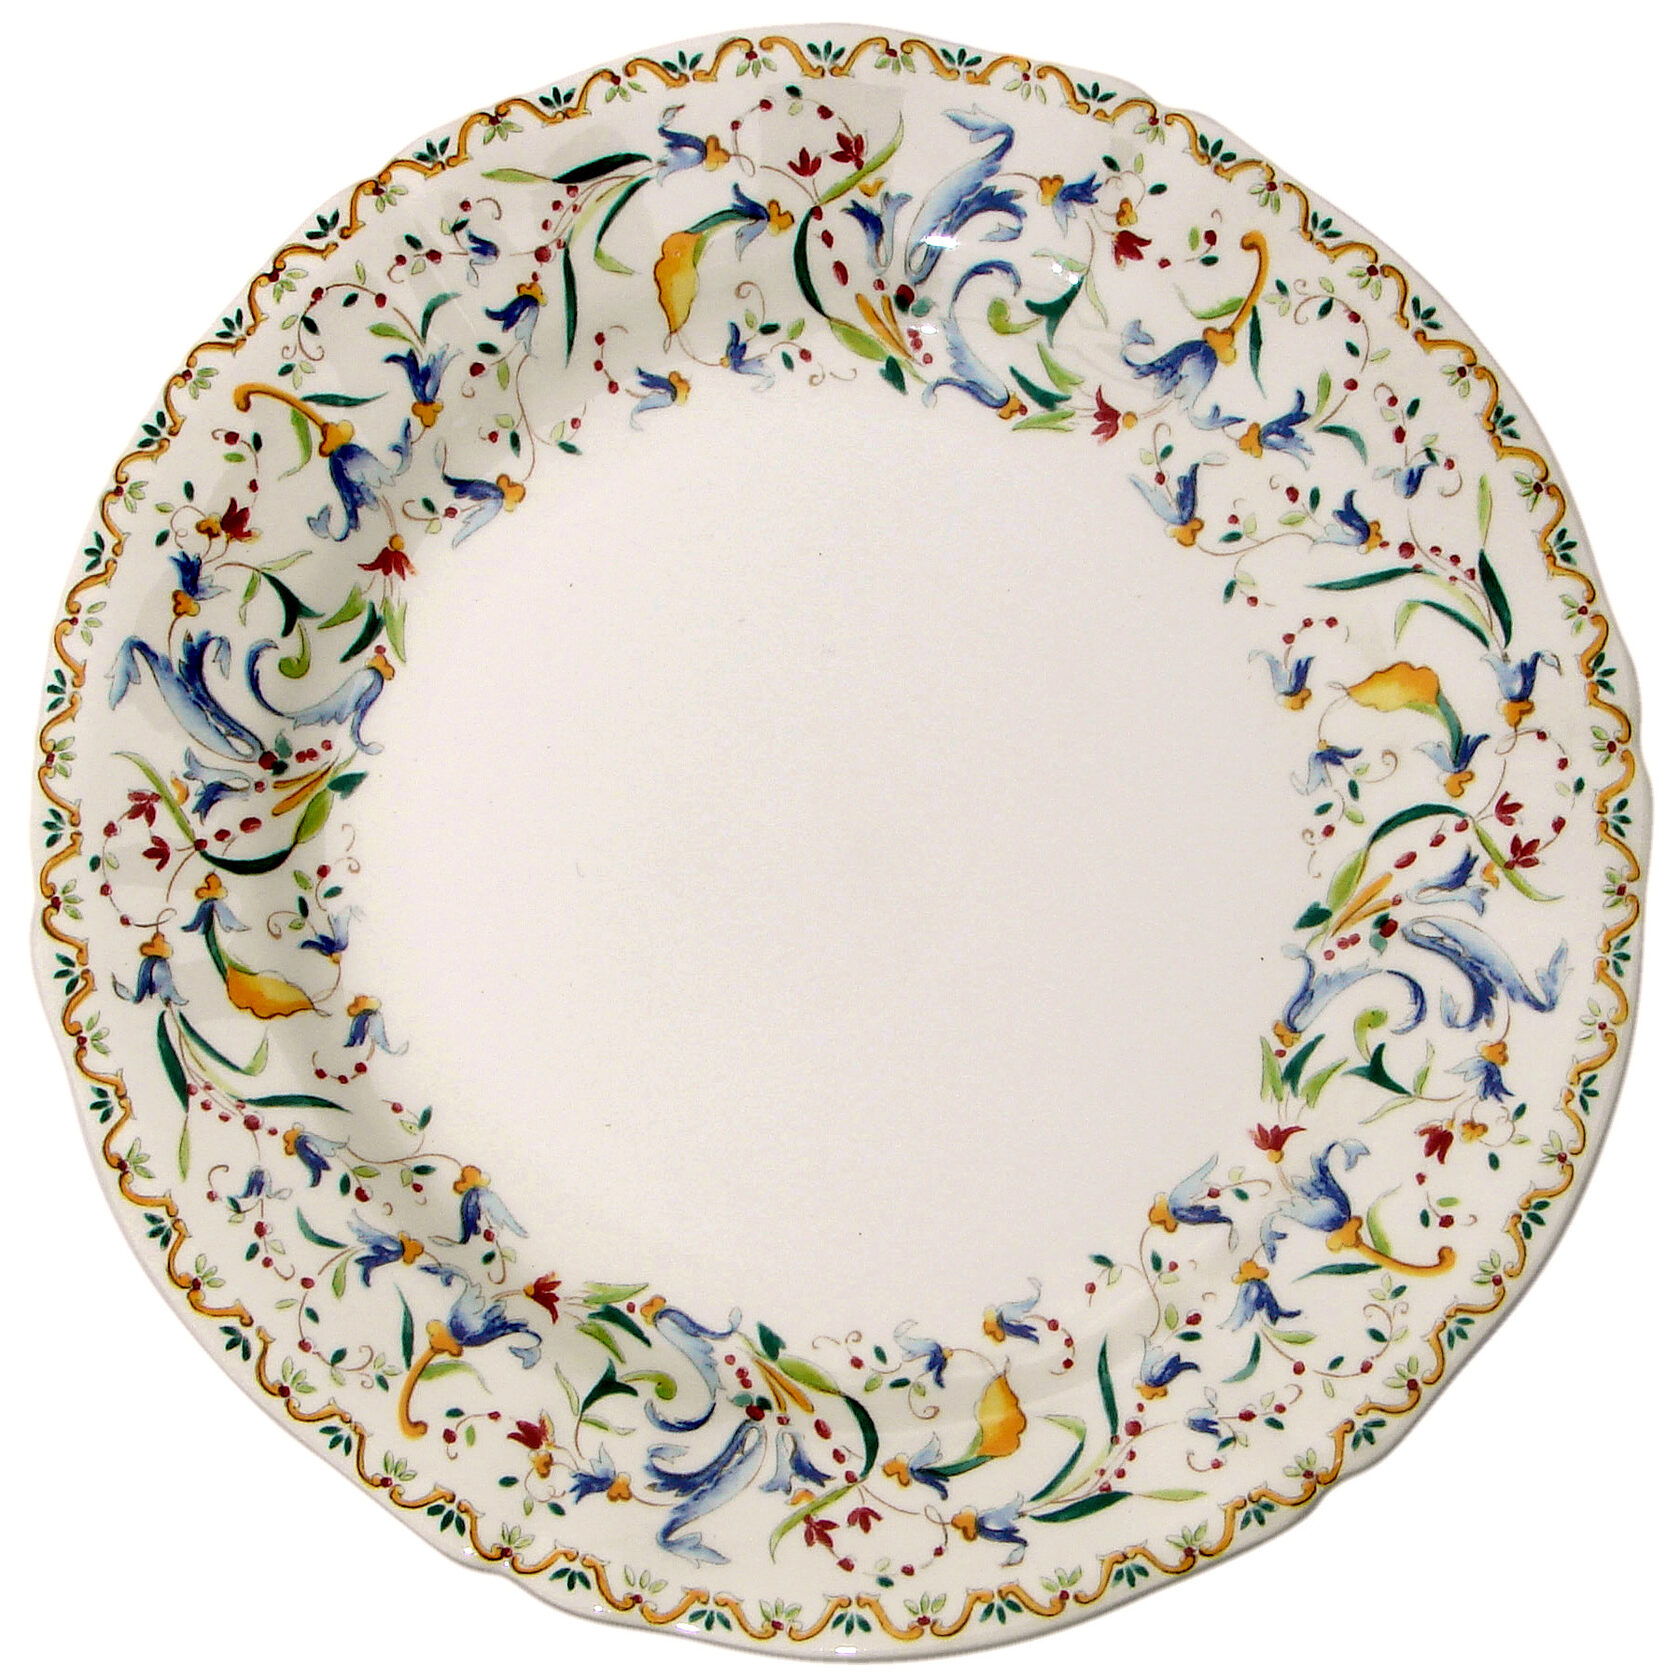 Тарелка обеденная фарфор. Тоскана Gien. Toscana от Gien. Посуда фаянс Тоскана. Набор тарелок обеденных Gien Тоскана.